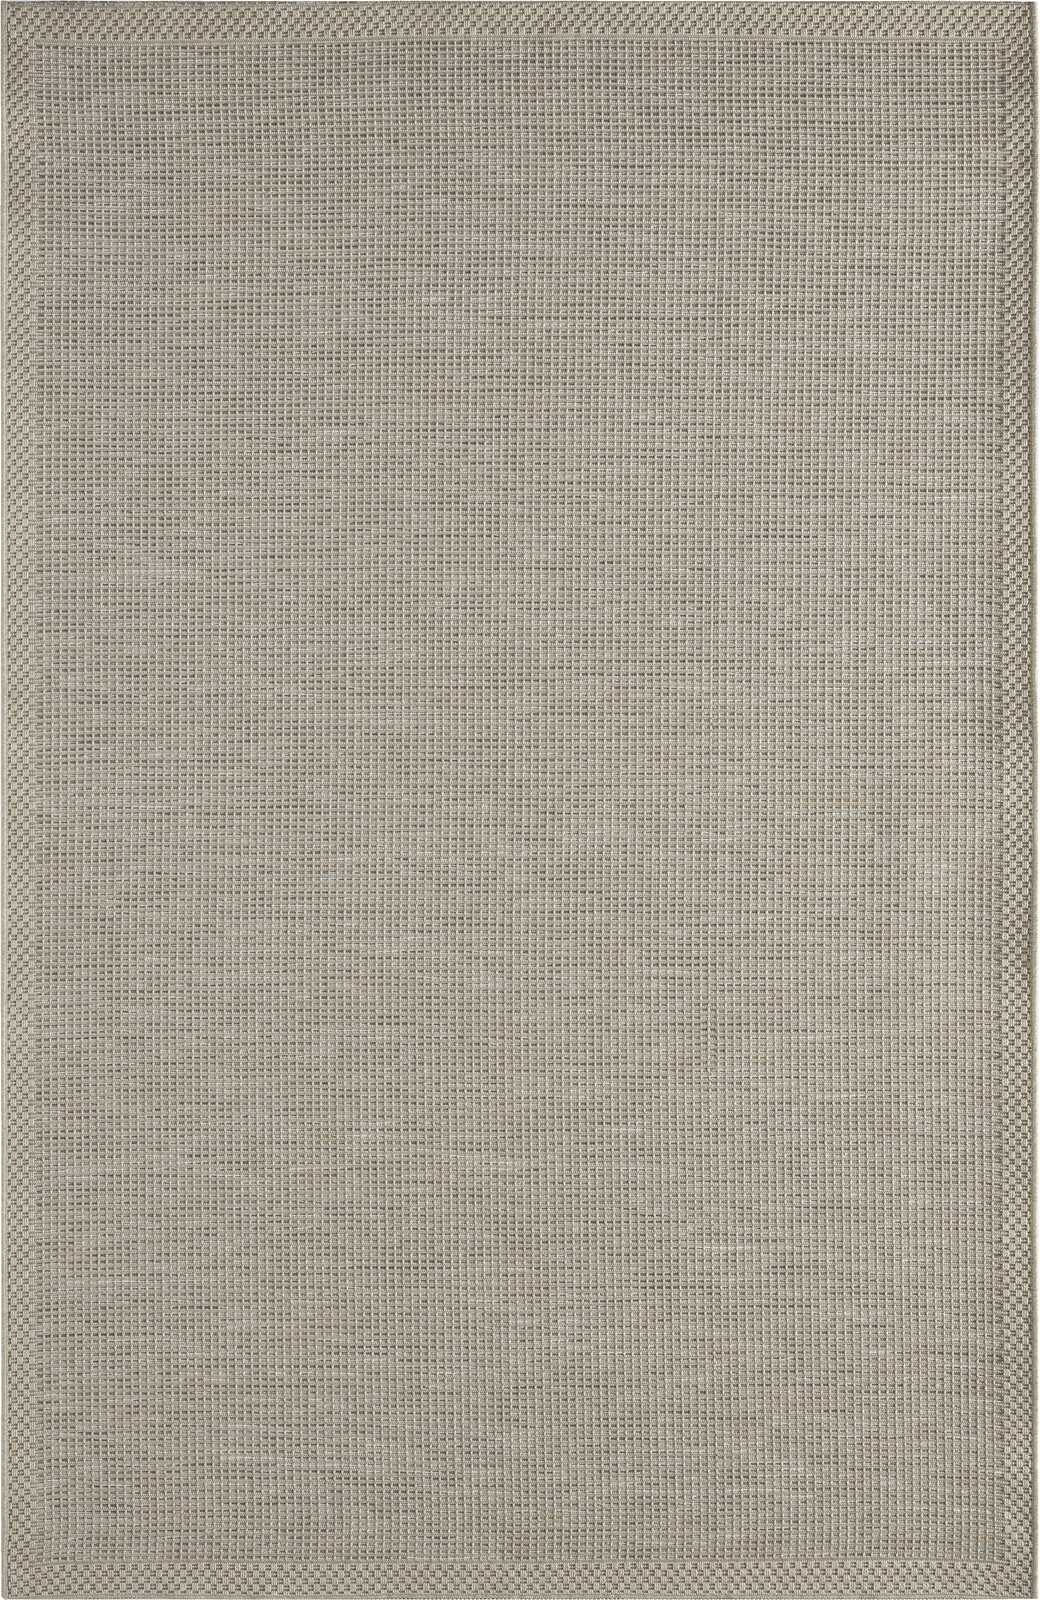             Flatweave Vloerkleed voor Buiten in Grijs - 220 x 160 cm
        